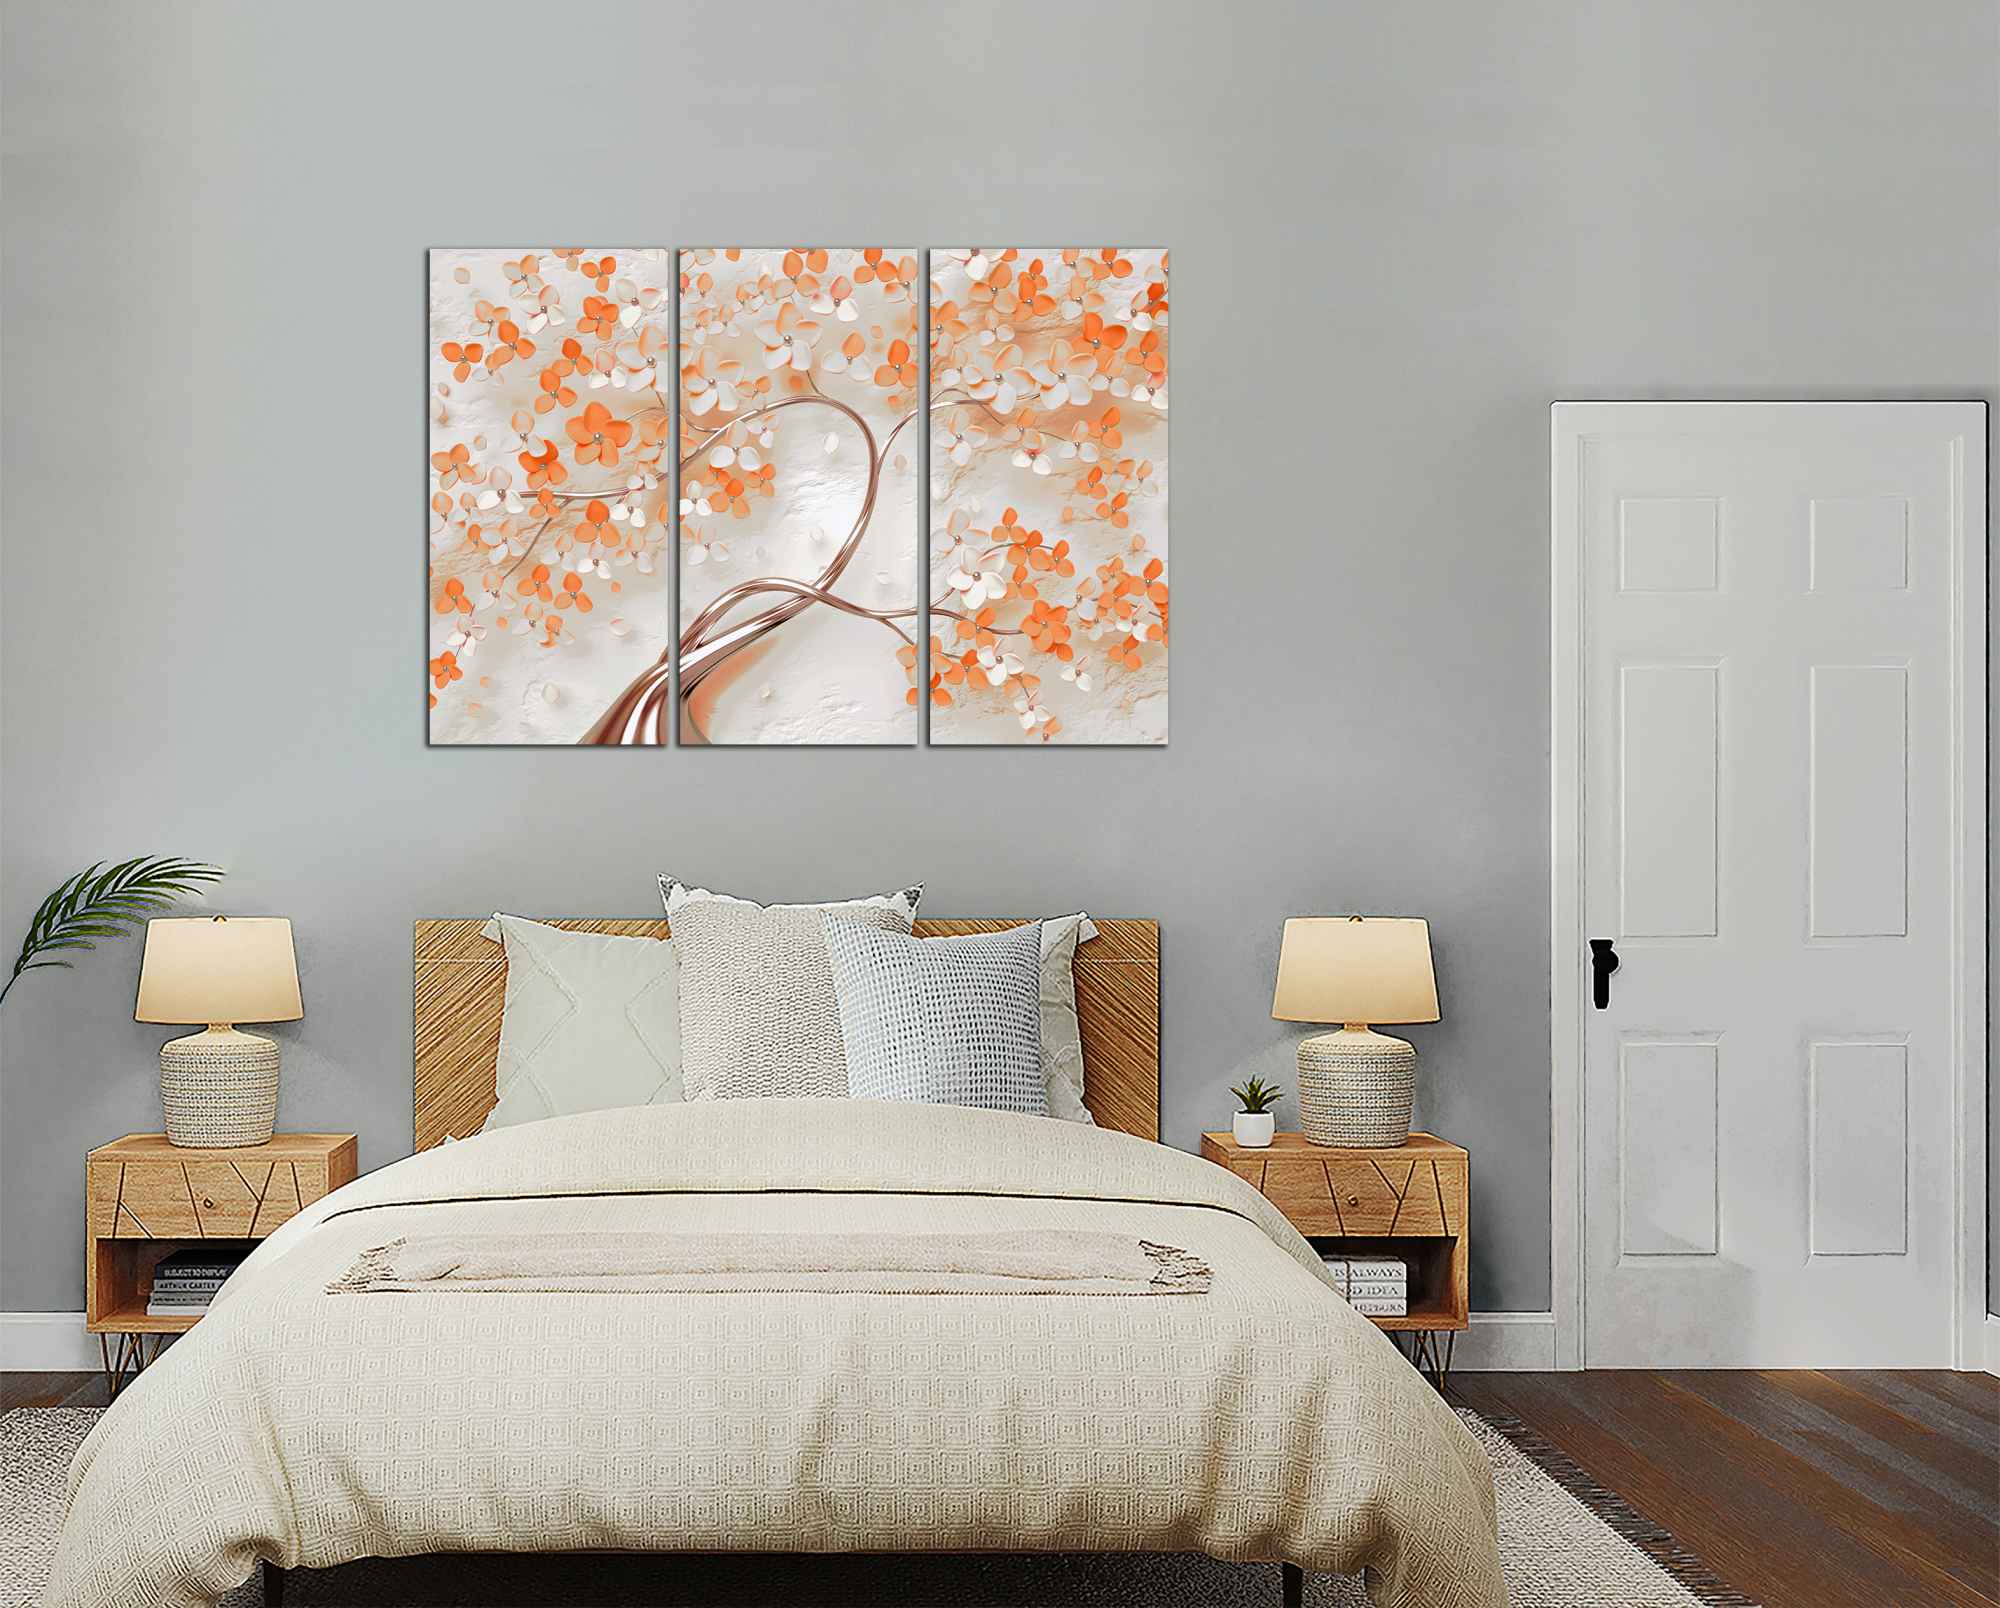 Obdelníkový obraz Strom s oranžovými květy